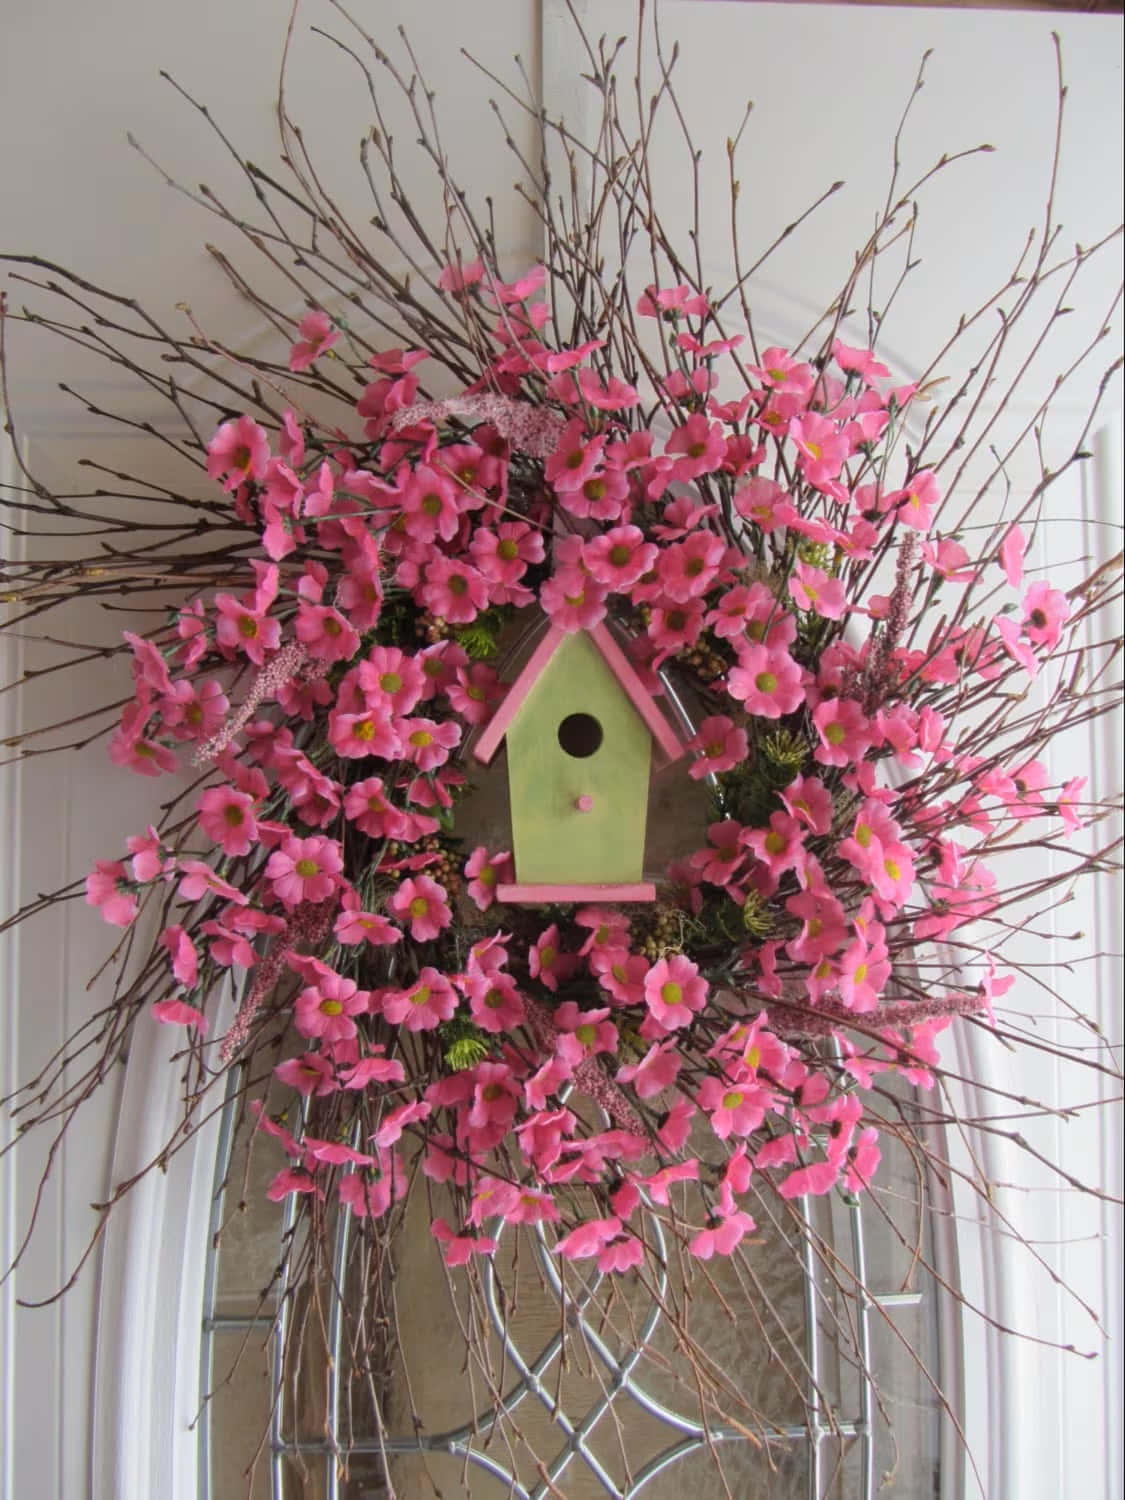 Beautiful Handcrafted Spring Wreath on Wooden Door Wallpaper